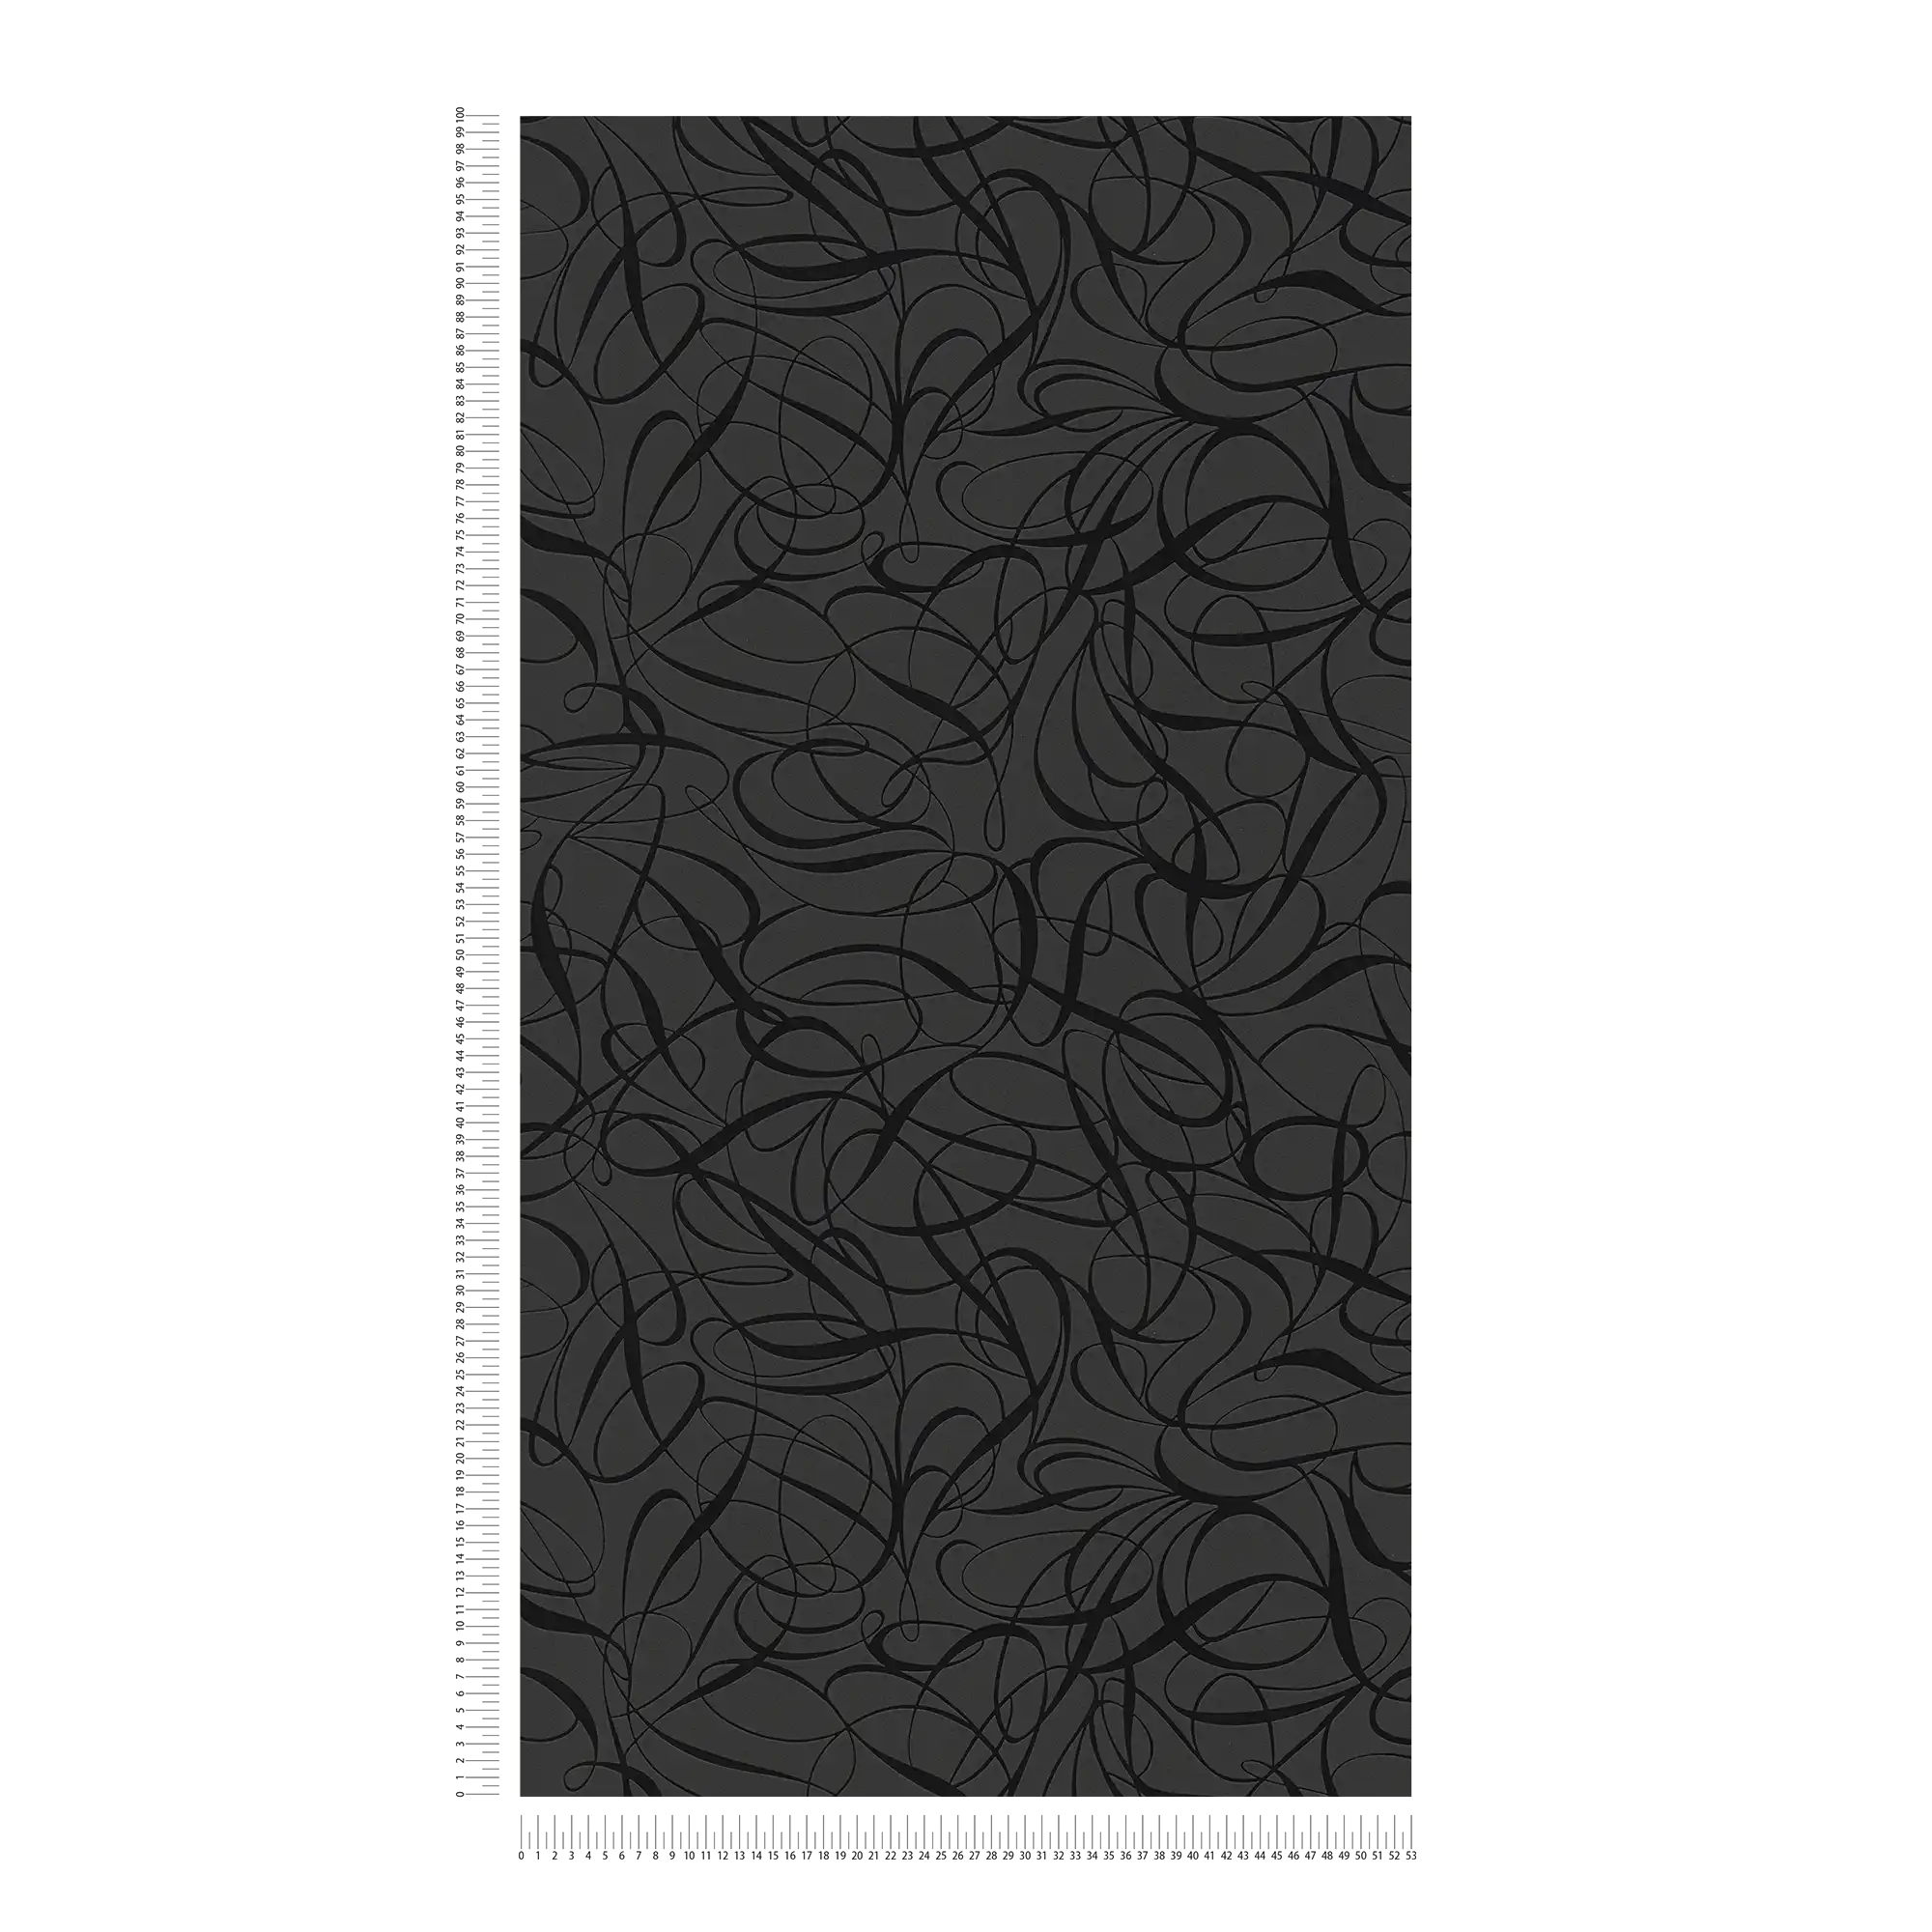             Carta da parati in tessuto non tessuto con motivo a linee ed effetto lucido - nero, metallizzato
        